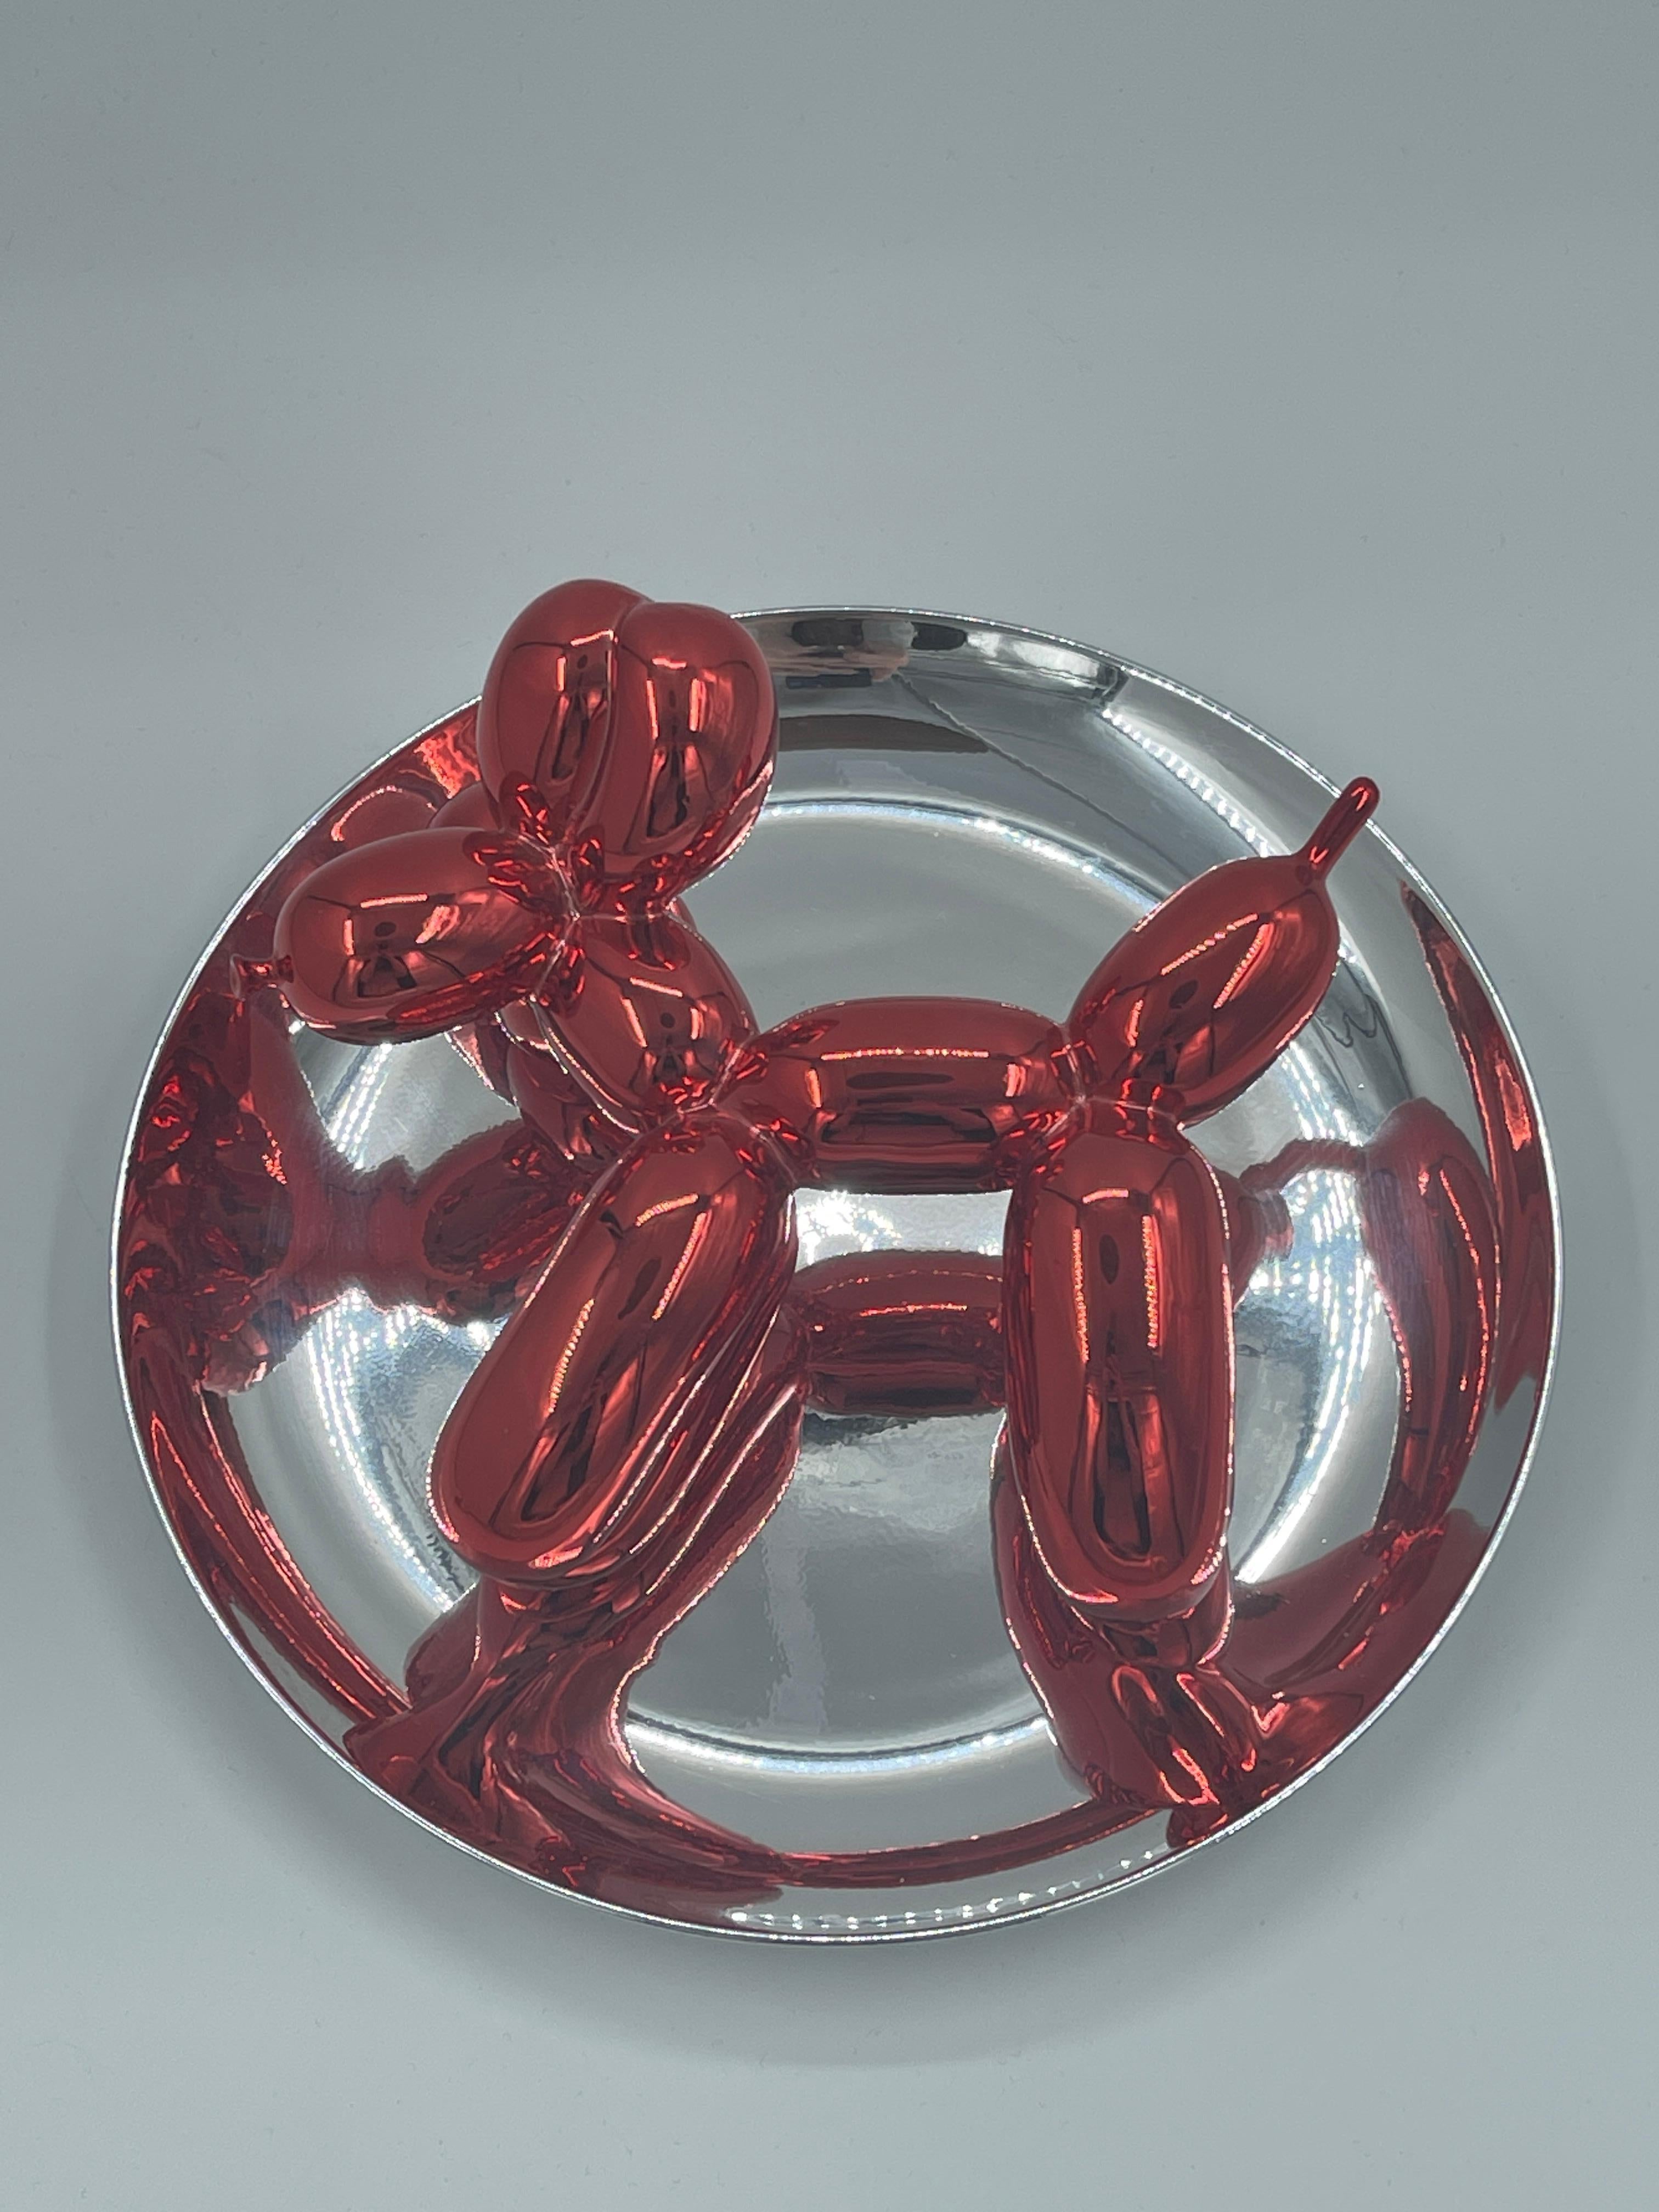 Assiette en porcelaine métallique rouge et argent, fabriquée en 1995, numérotée 723/2300 sur l'étiquette située sous l'assiette. Publié par le Museum of Contemporary Art, Los Angeles, avec la boîte d'origine et sans le support en plastique. 